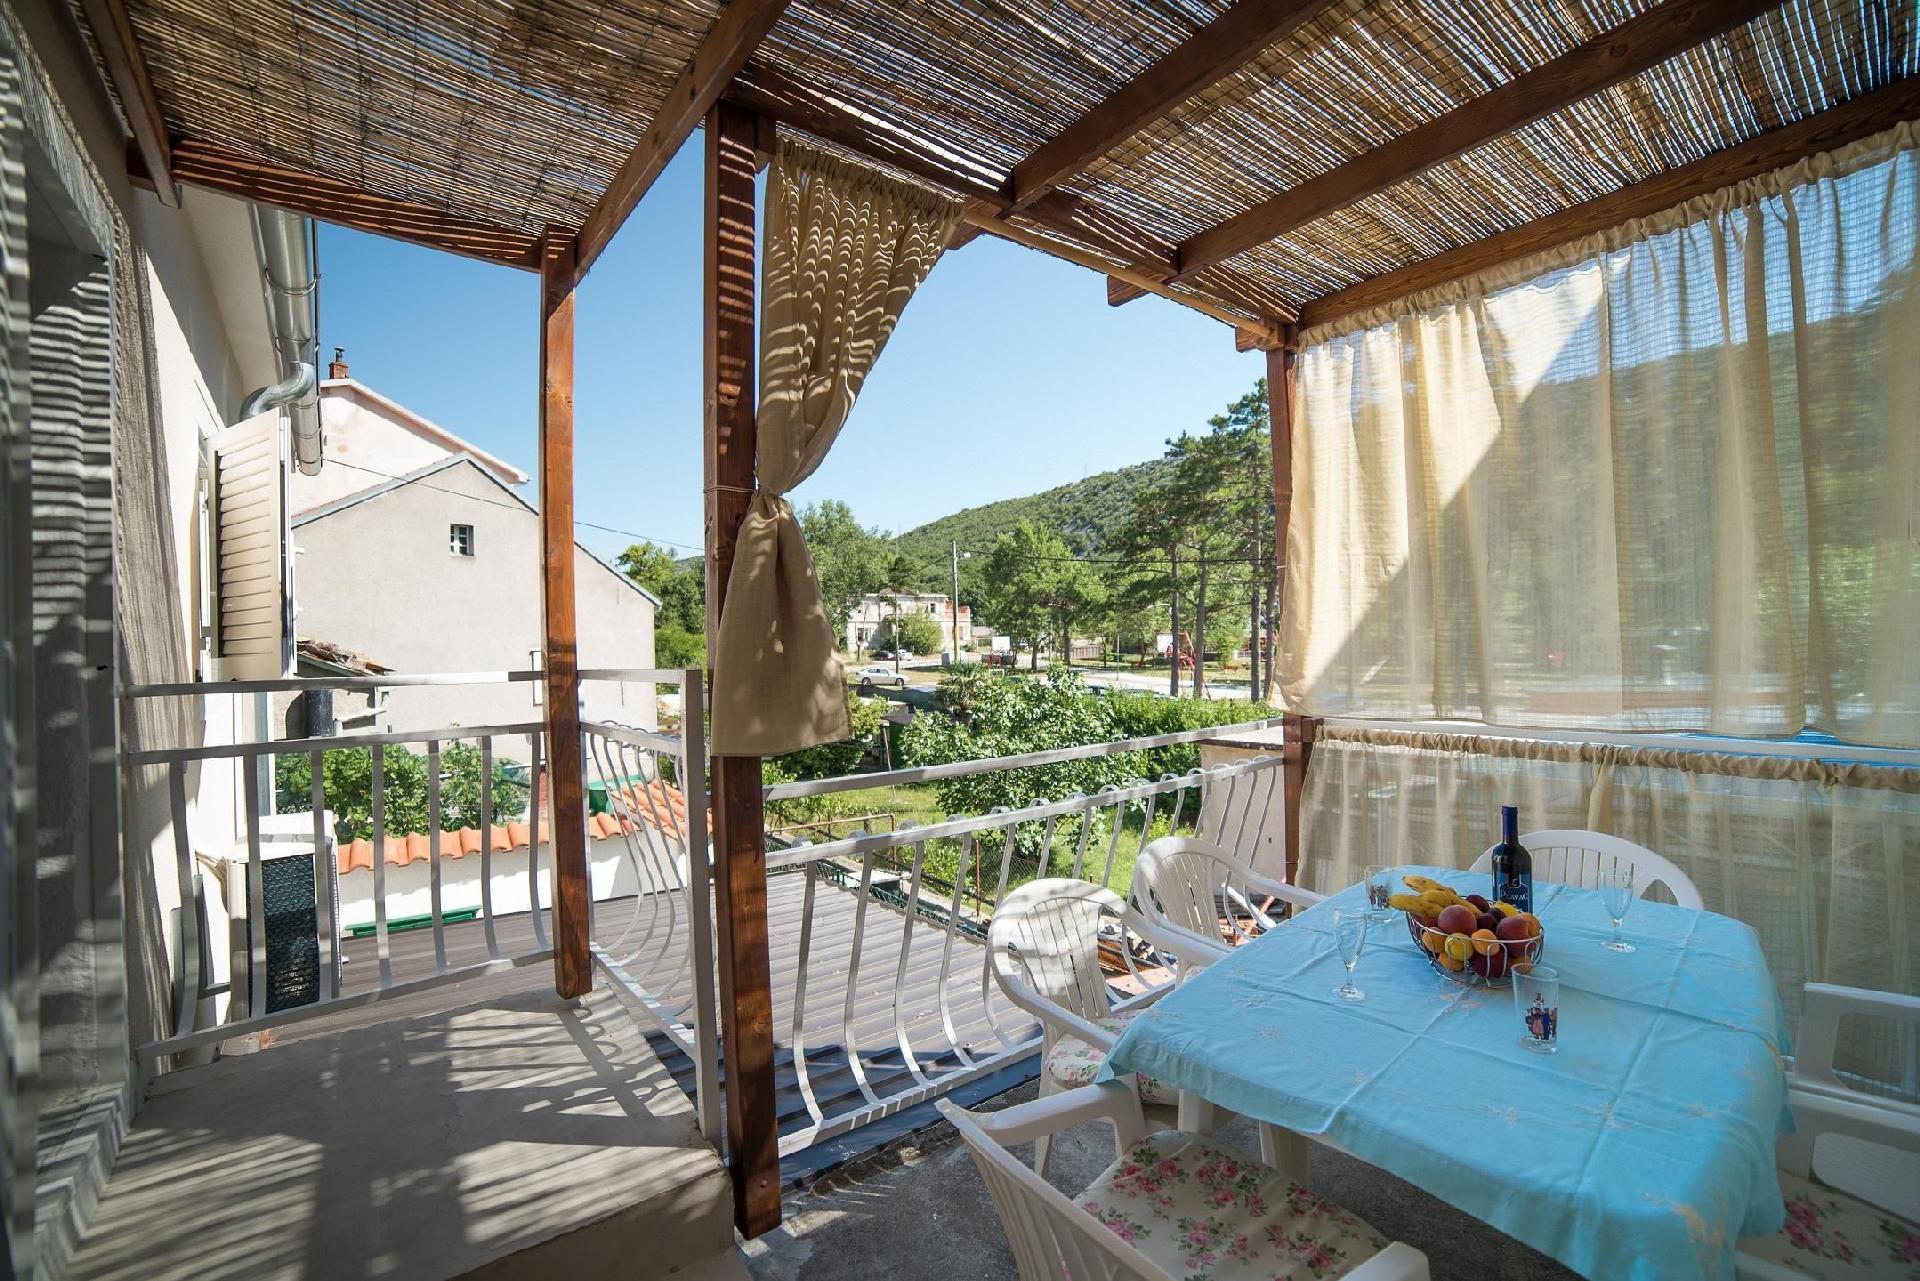 Ferienwohnung in Bakarac mit Terrasse Ferienhaus in Kroatien